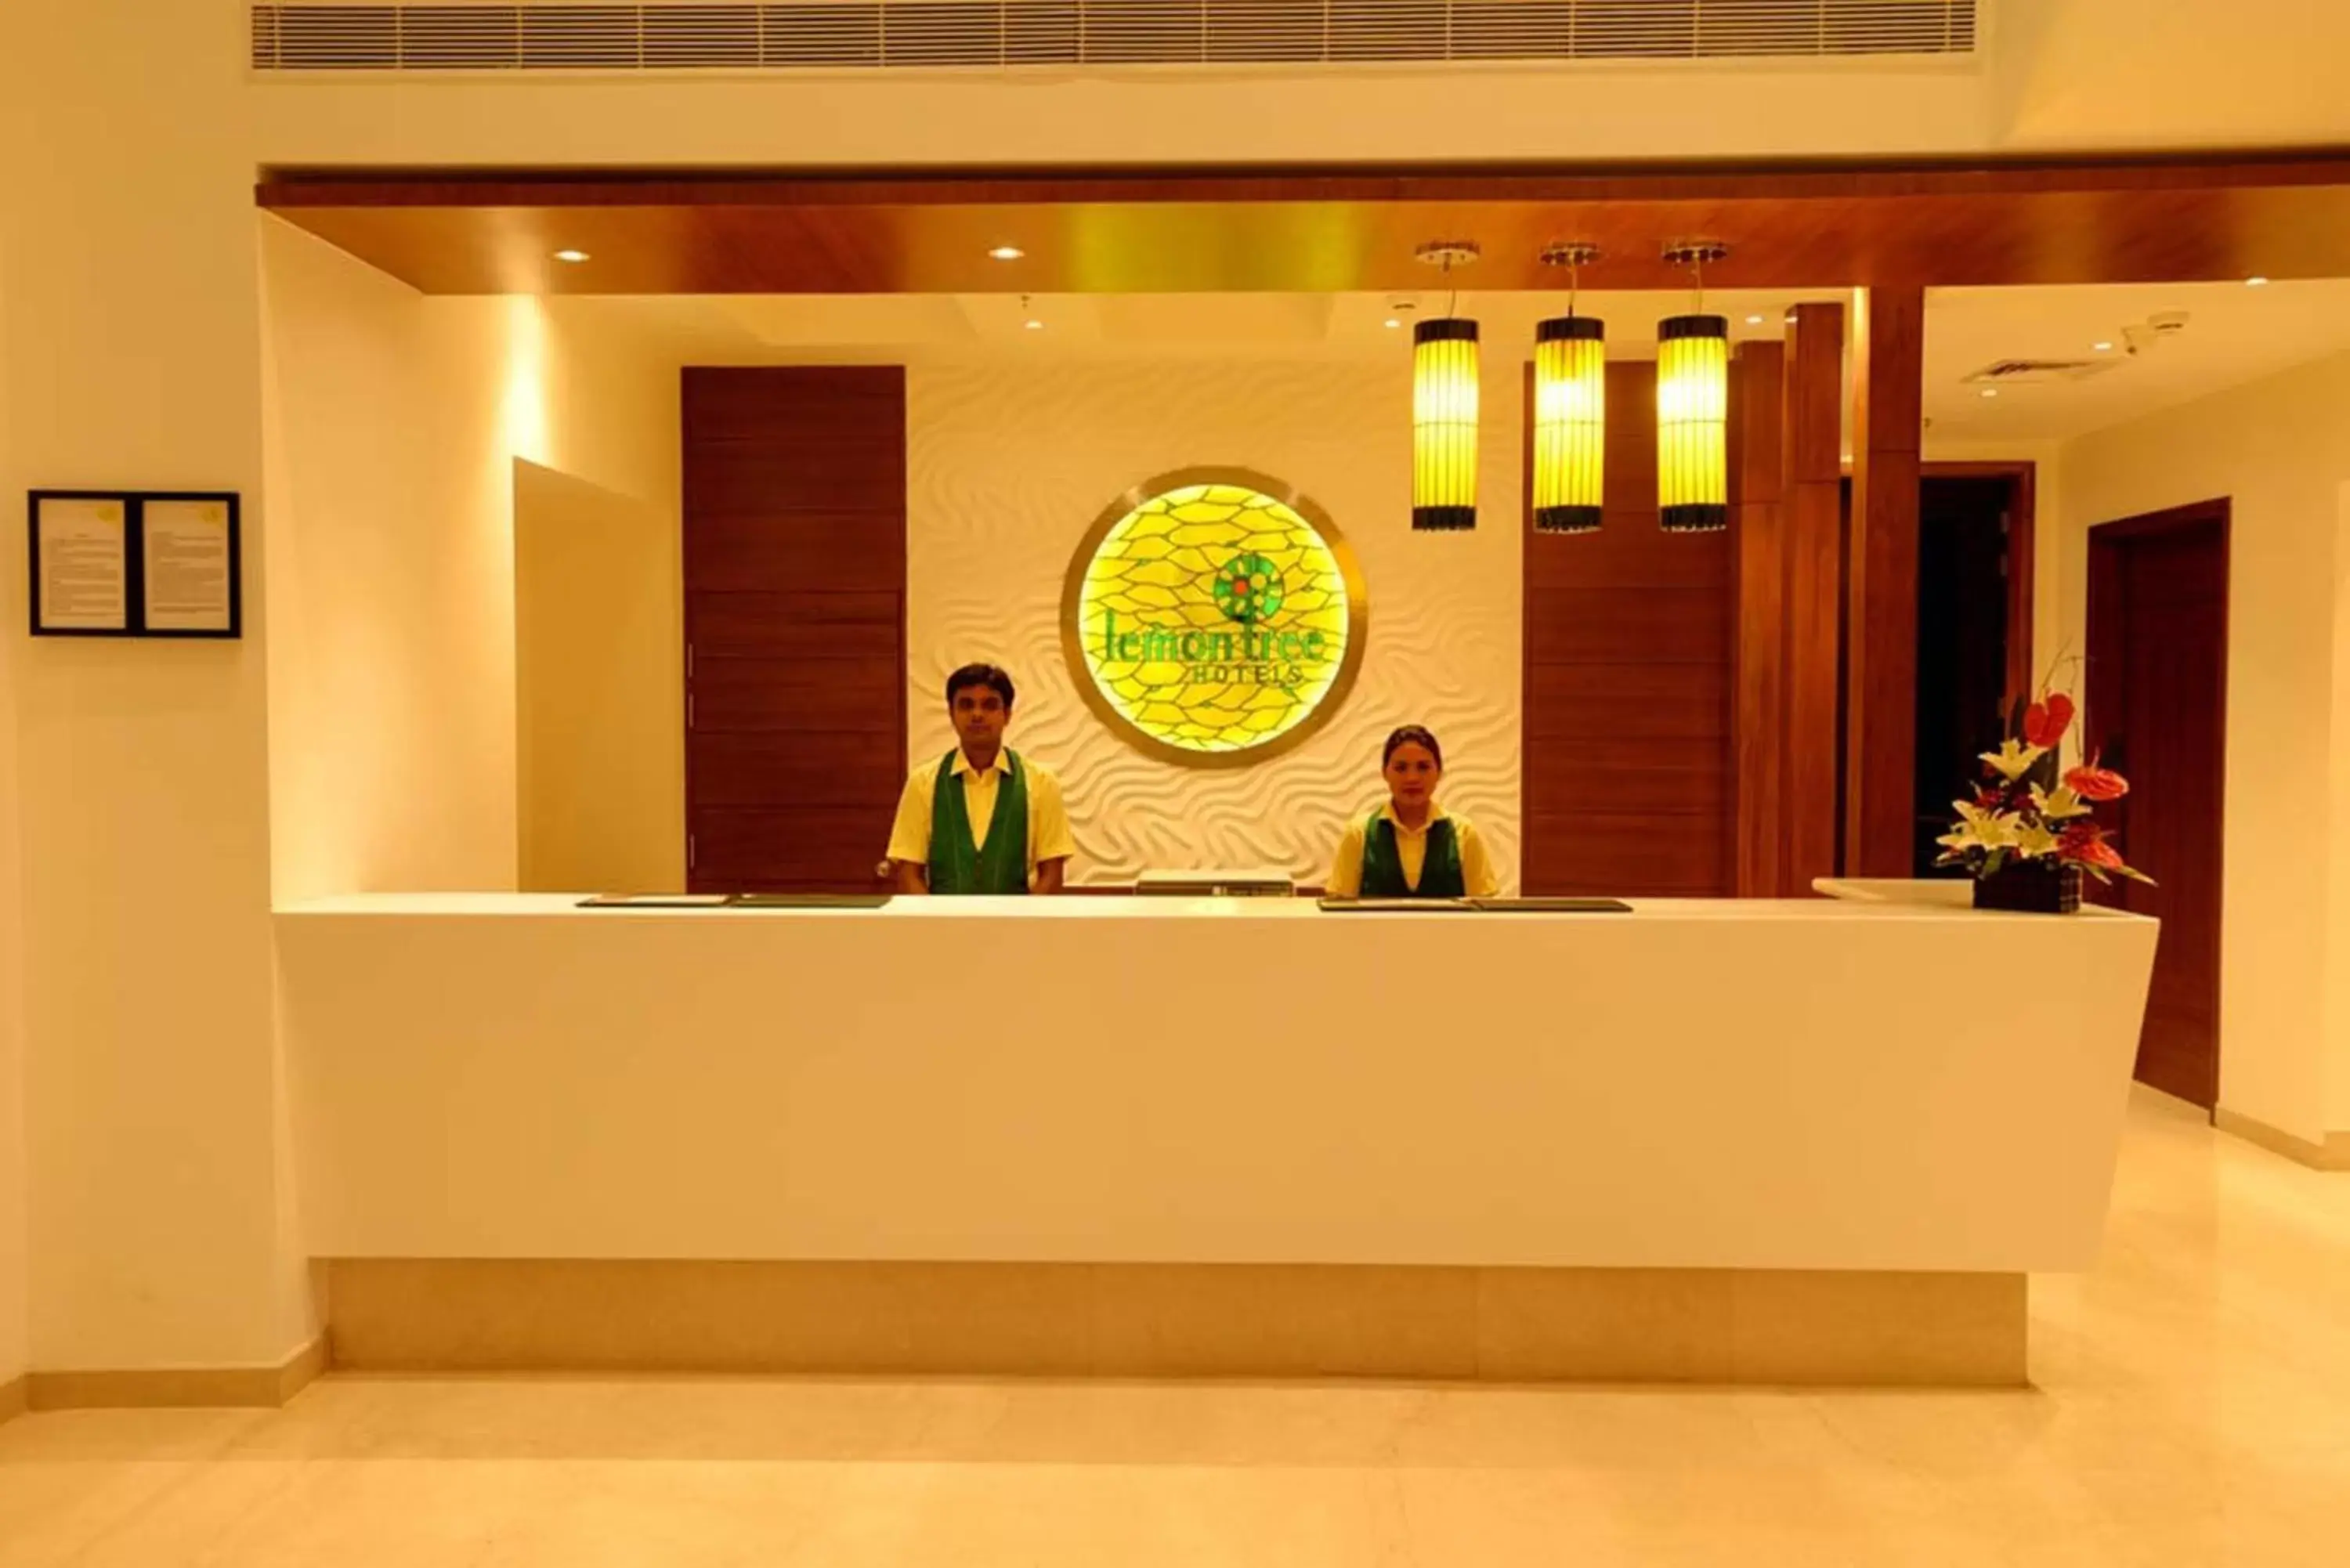 Lobby or reception, Lobby/Reception in Lemon Tree Hotel Coimbatore